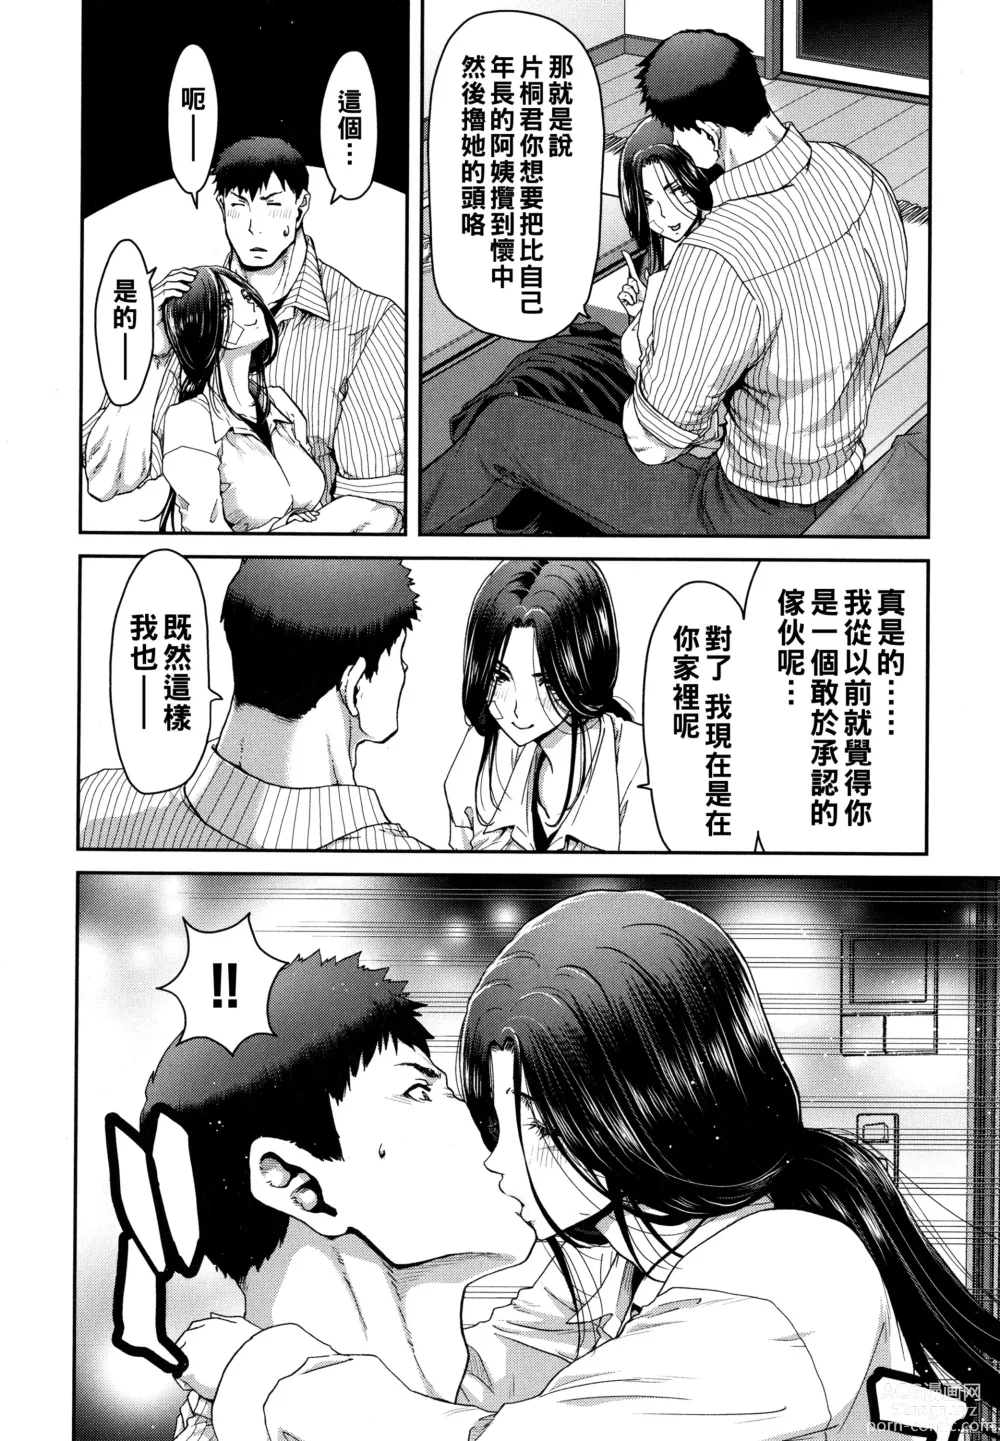 Page 14 of manga Iede Onna o Hirottara - When I picked up a runaway girl. + Melonbooks Gentei Tokuten   Otona no Iede Gojitsudan Sono Ato no Arisa to Akira